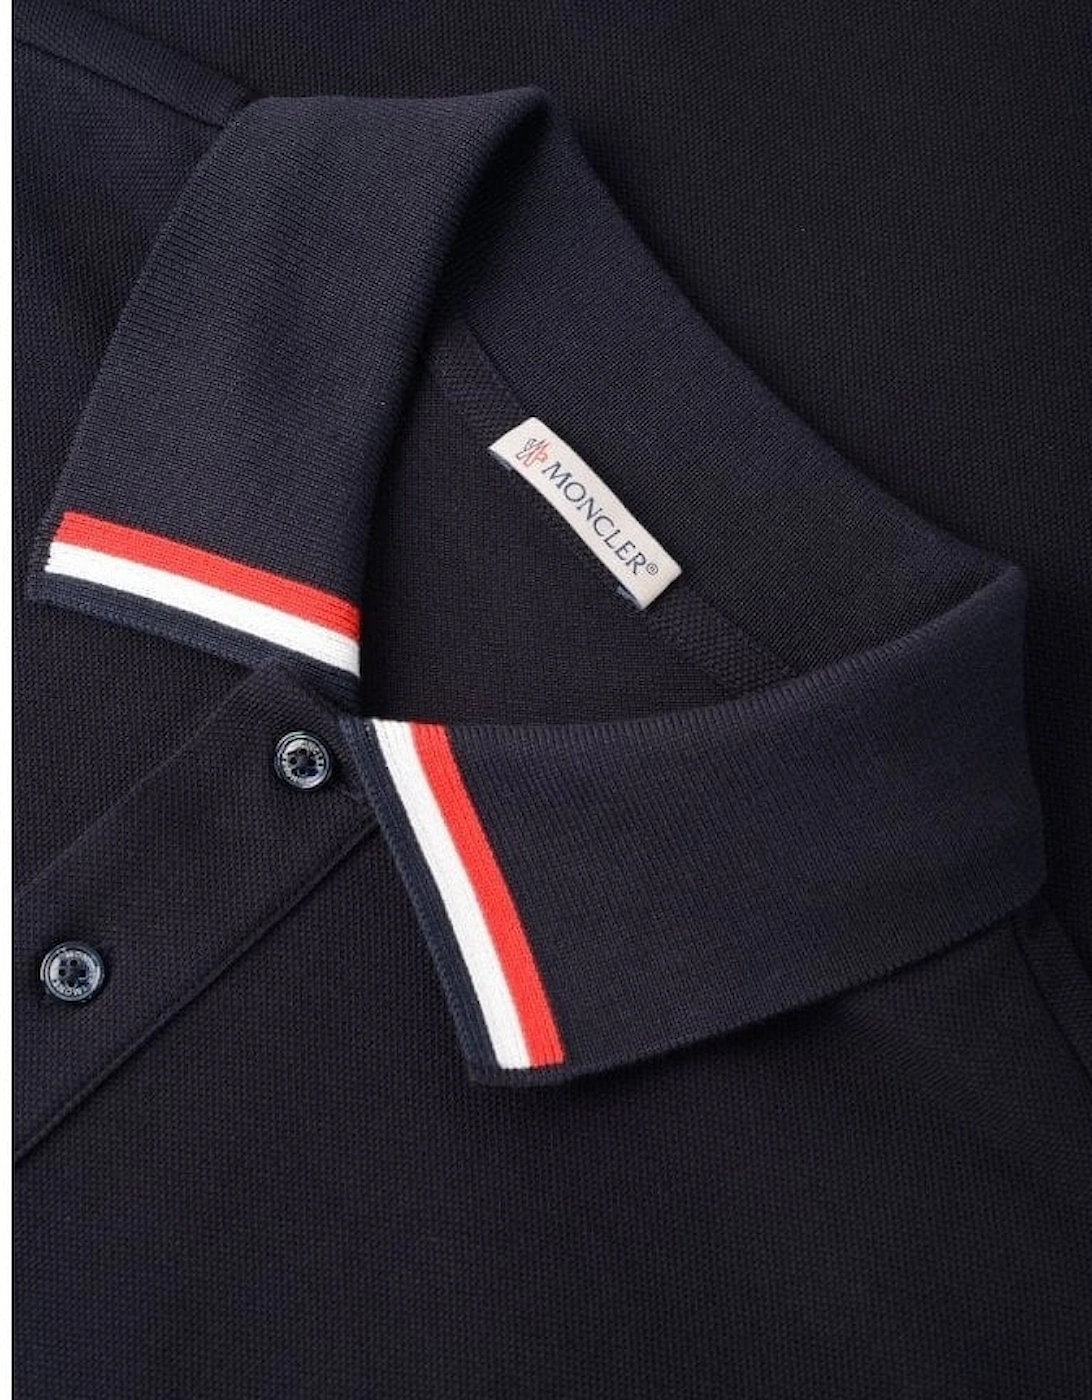 Collar RWB Stripe Polo Navy